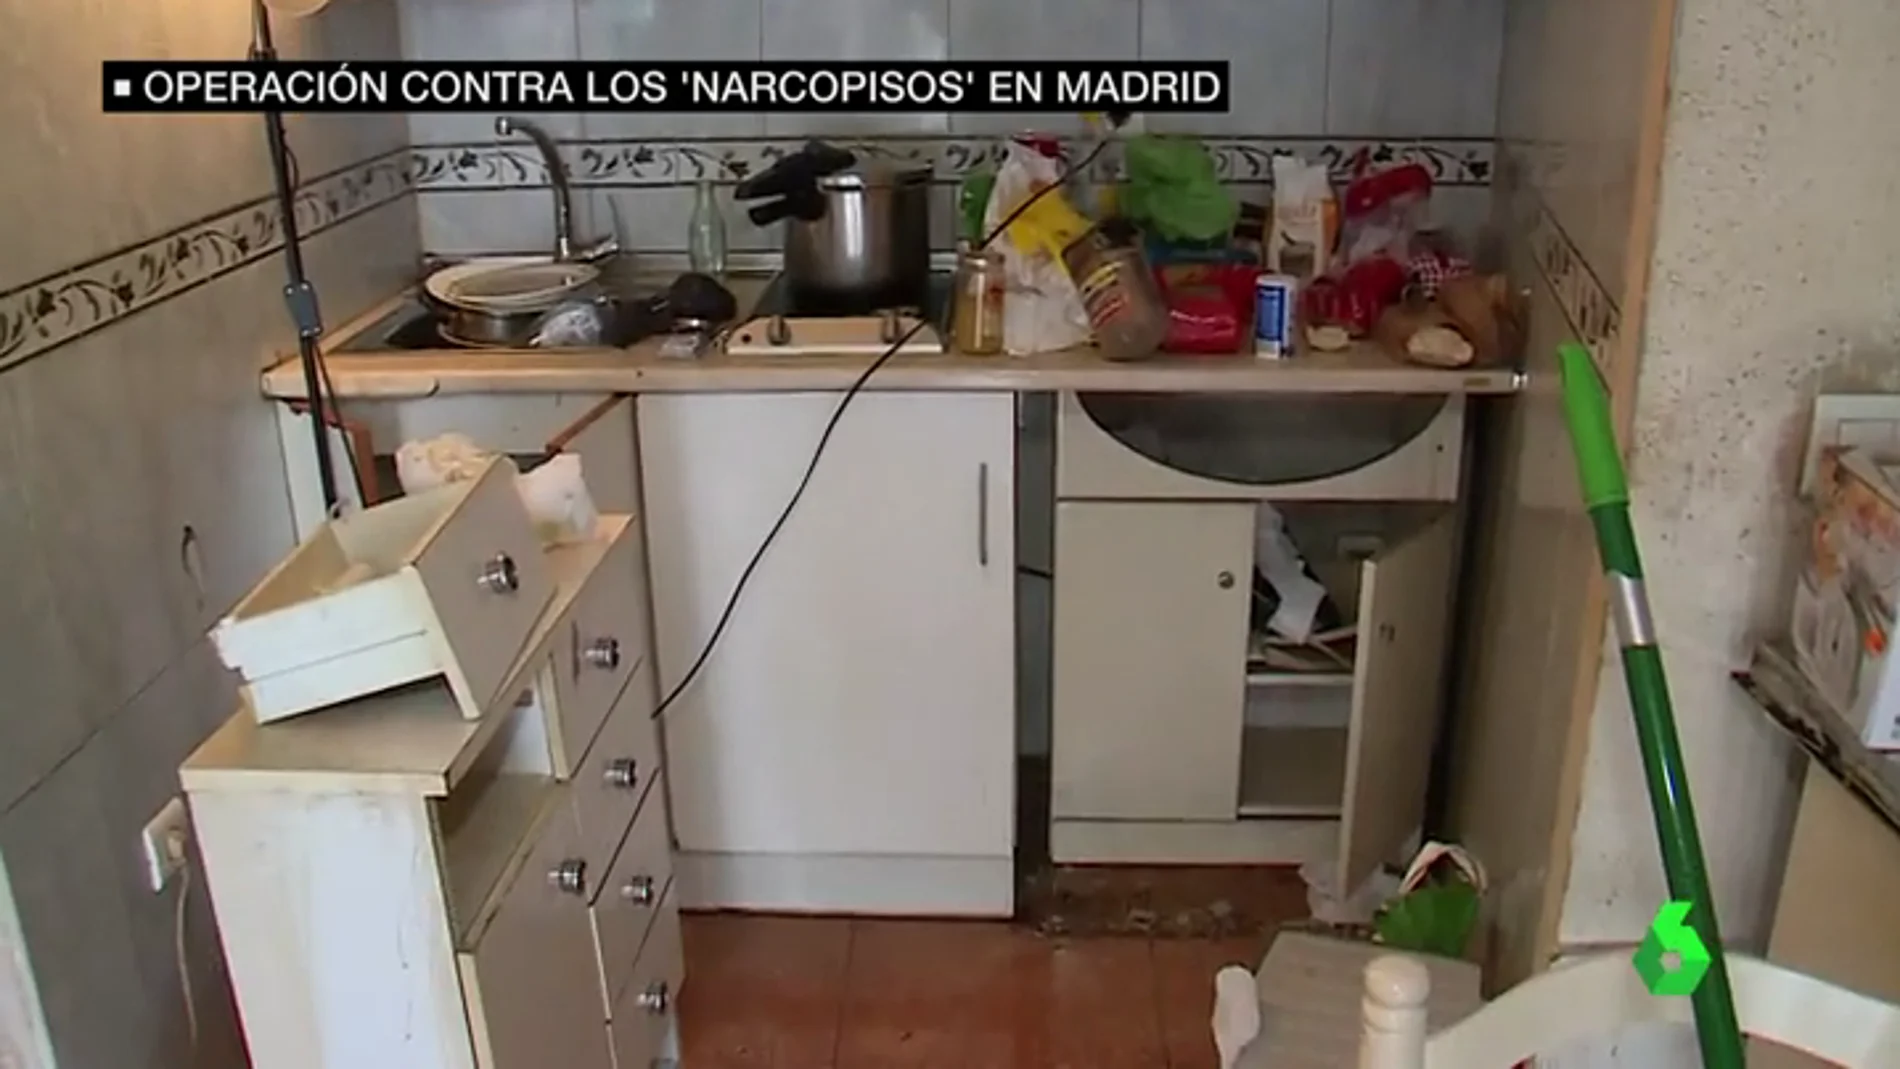 Operación policial en Madrid contra los narcopisos: desmantelados nueve domicilios particulares 